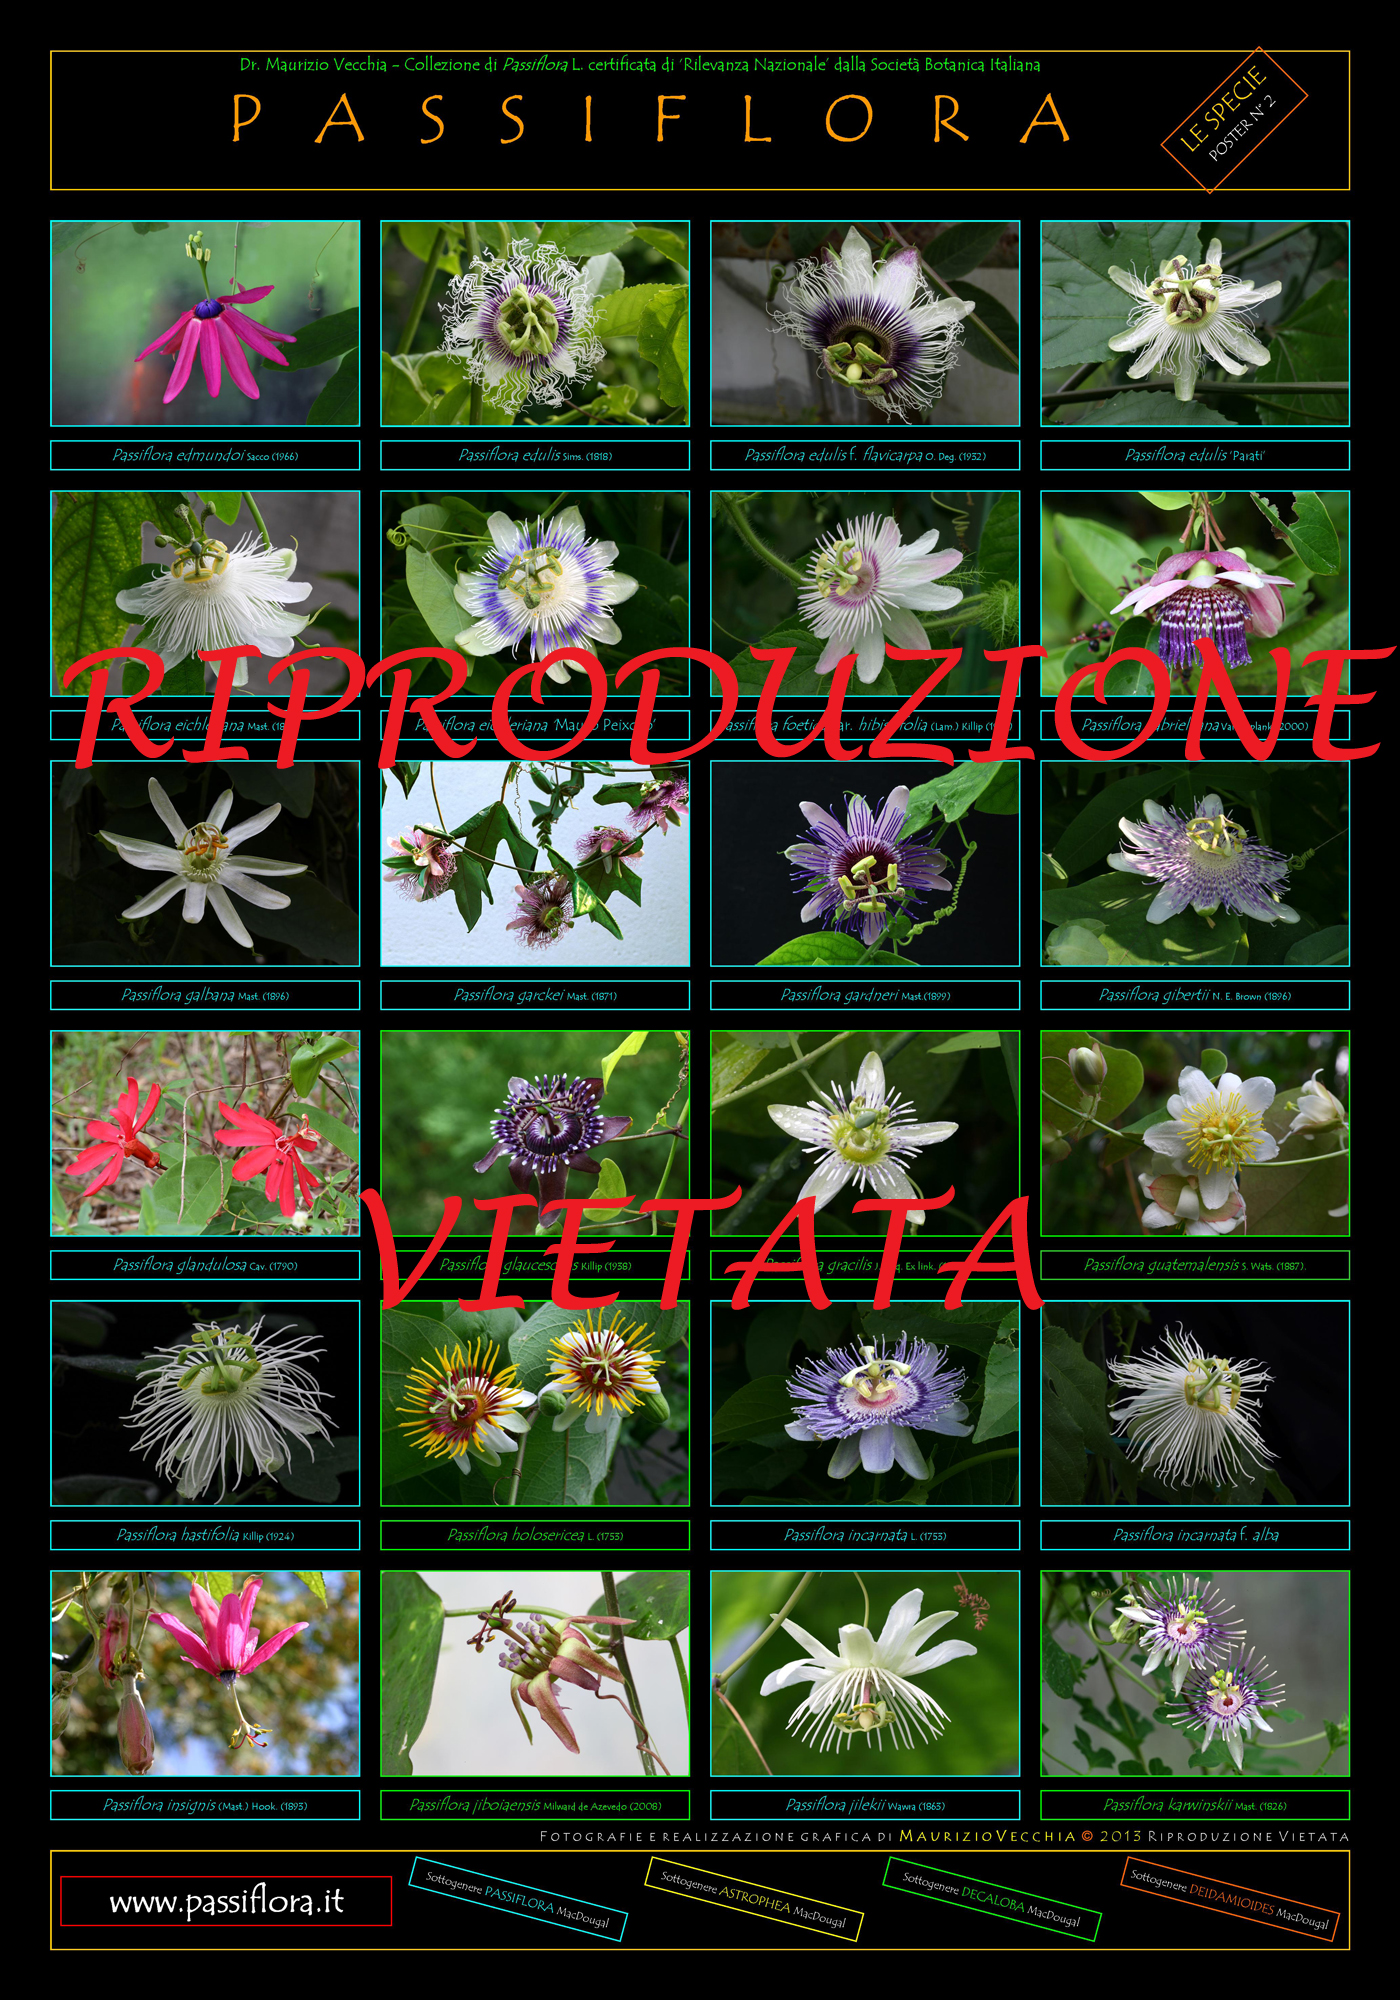 Poster Passiflora | Collezione Nazionale Italiana di M. Vecchia